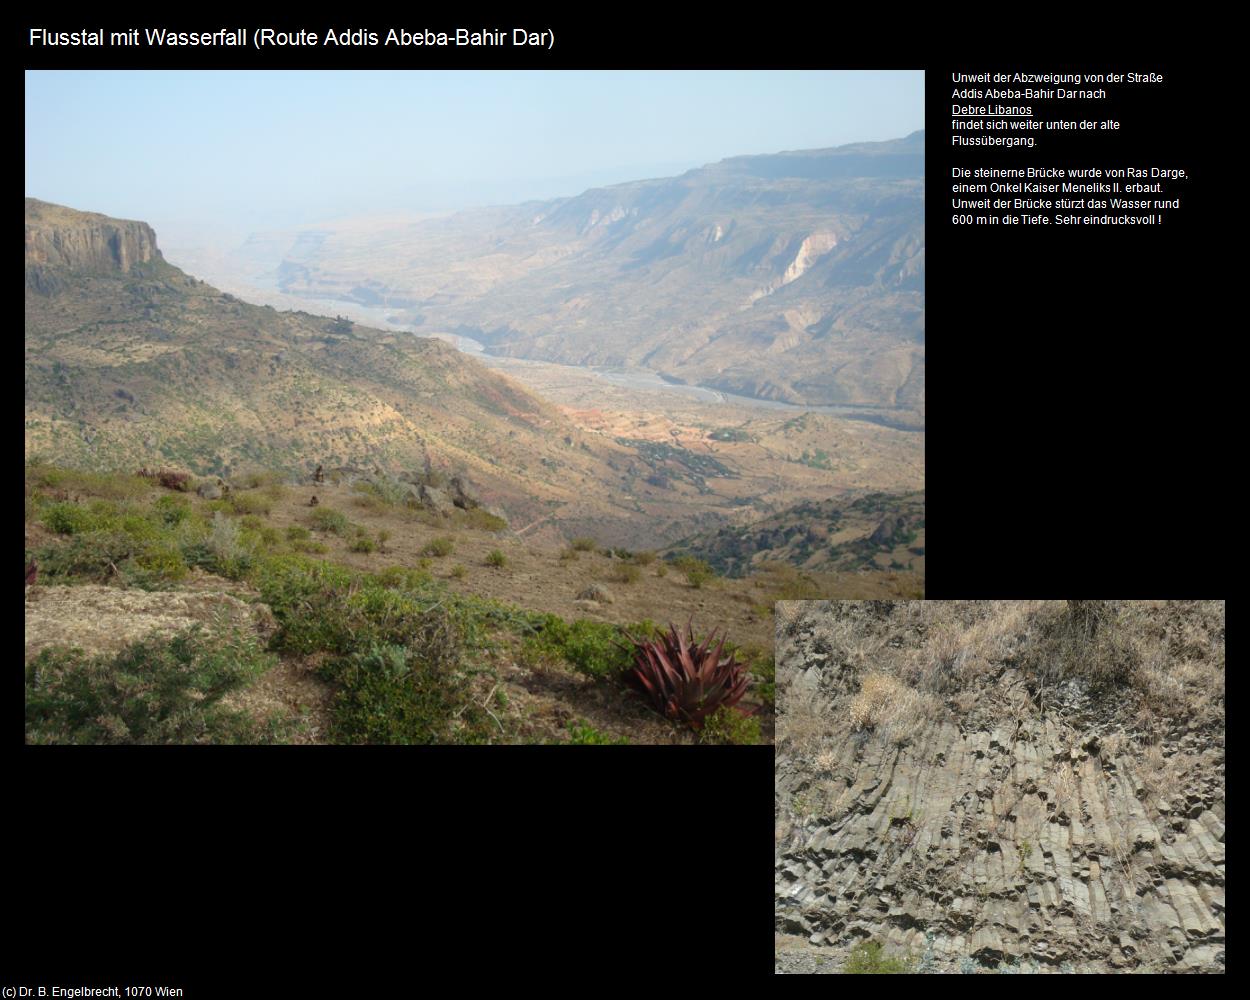 Flusstal mit Wasserfall (Route Addis Abeba-Bar Dahir) in Äthiopien(c)B.Engelbrecht